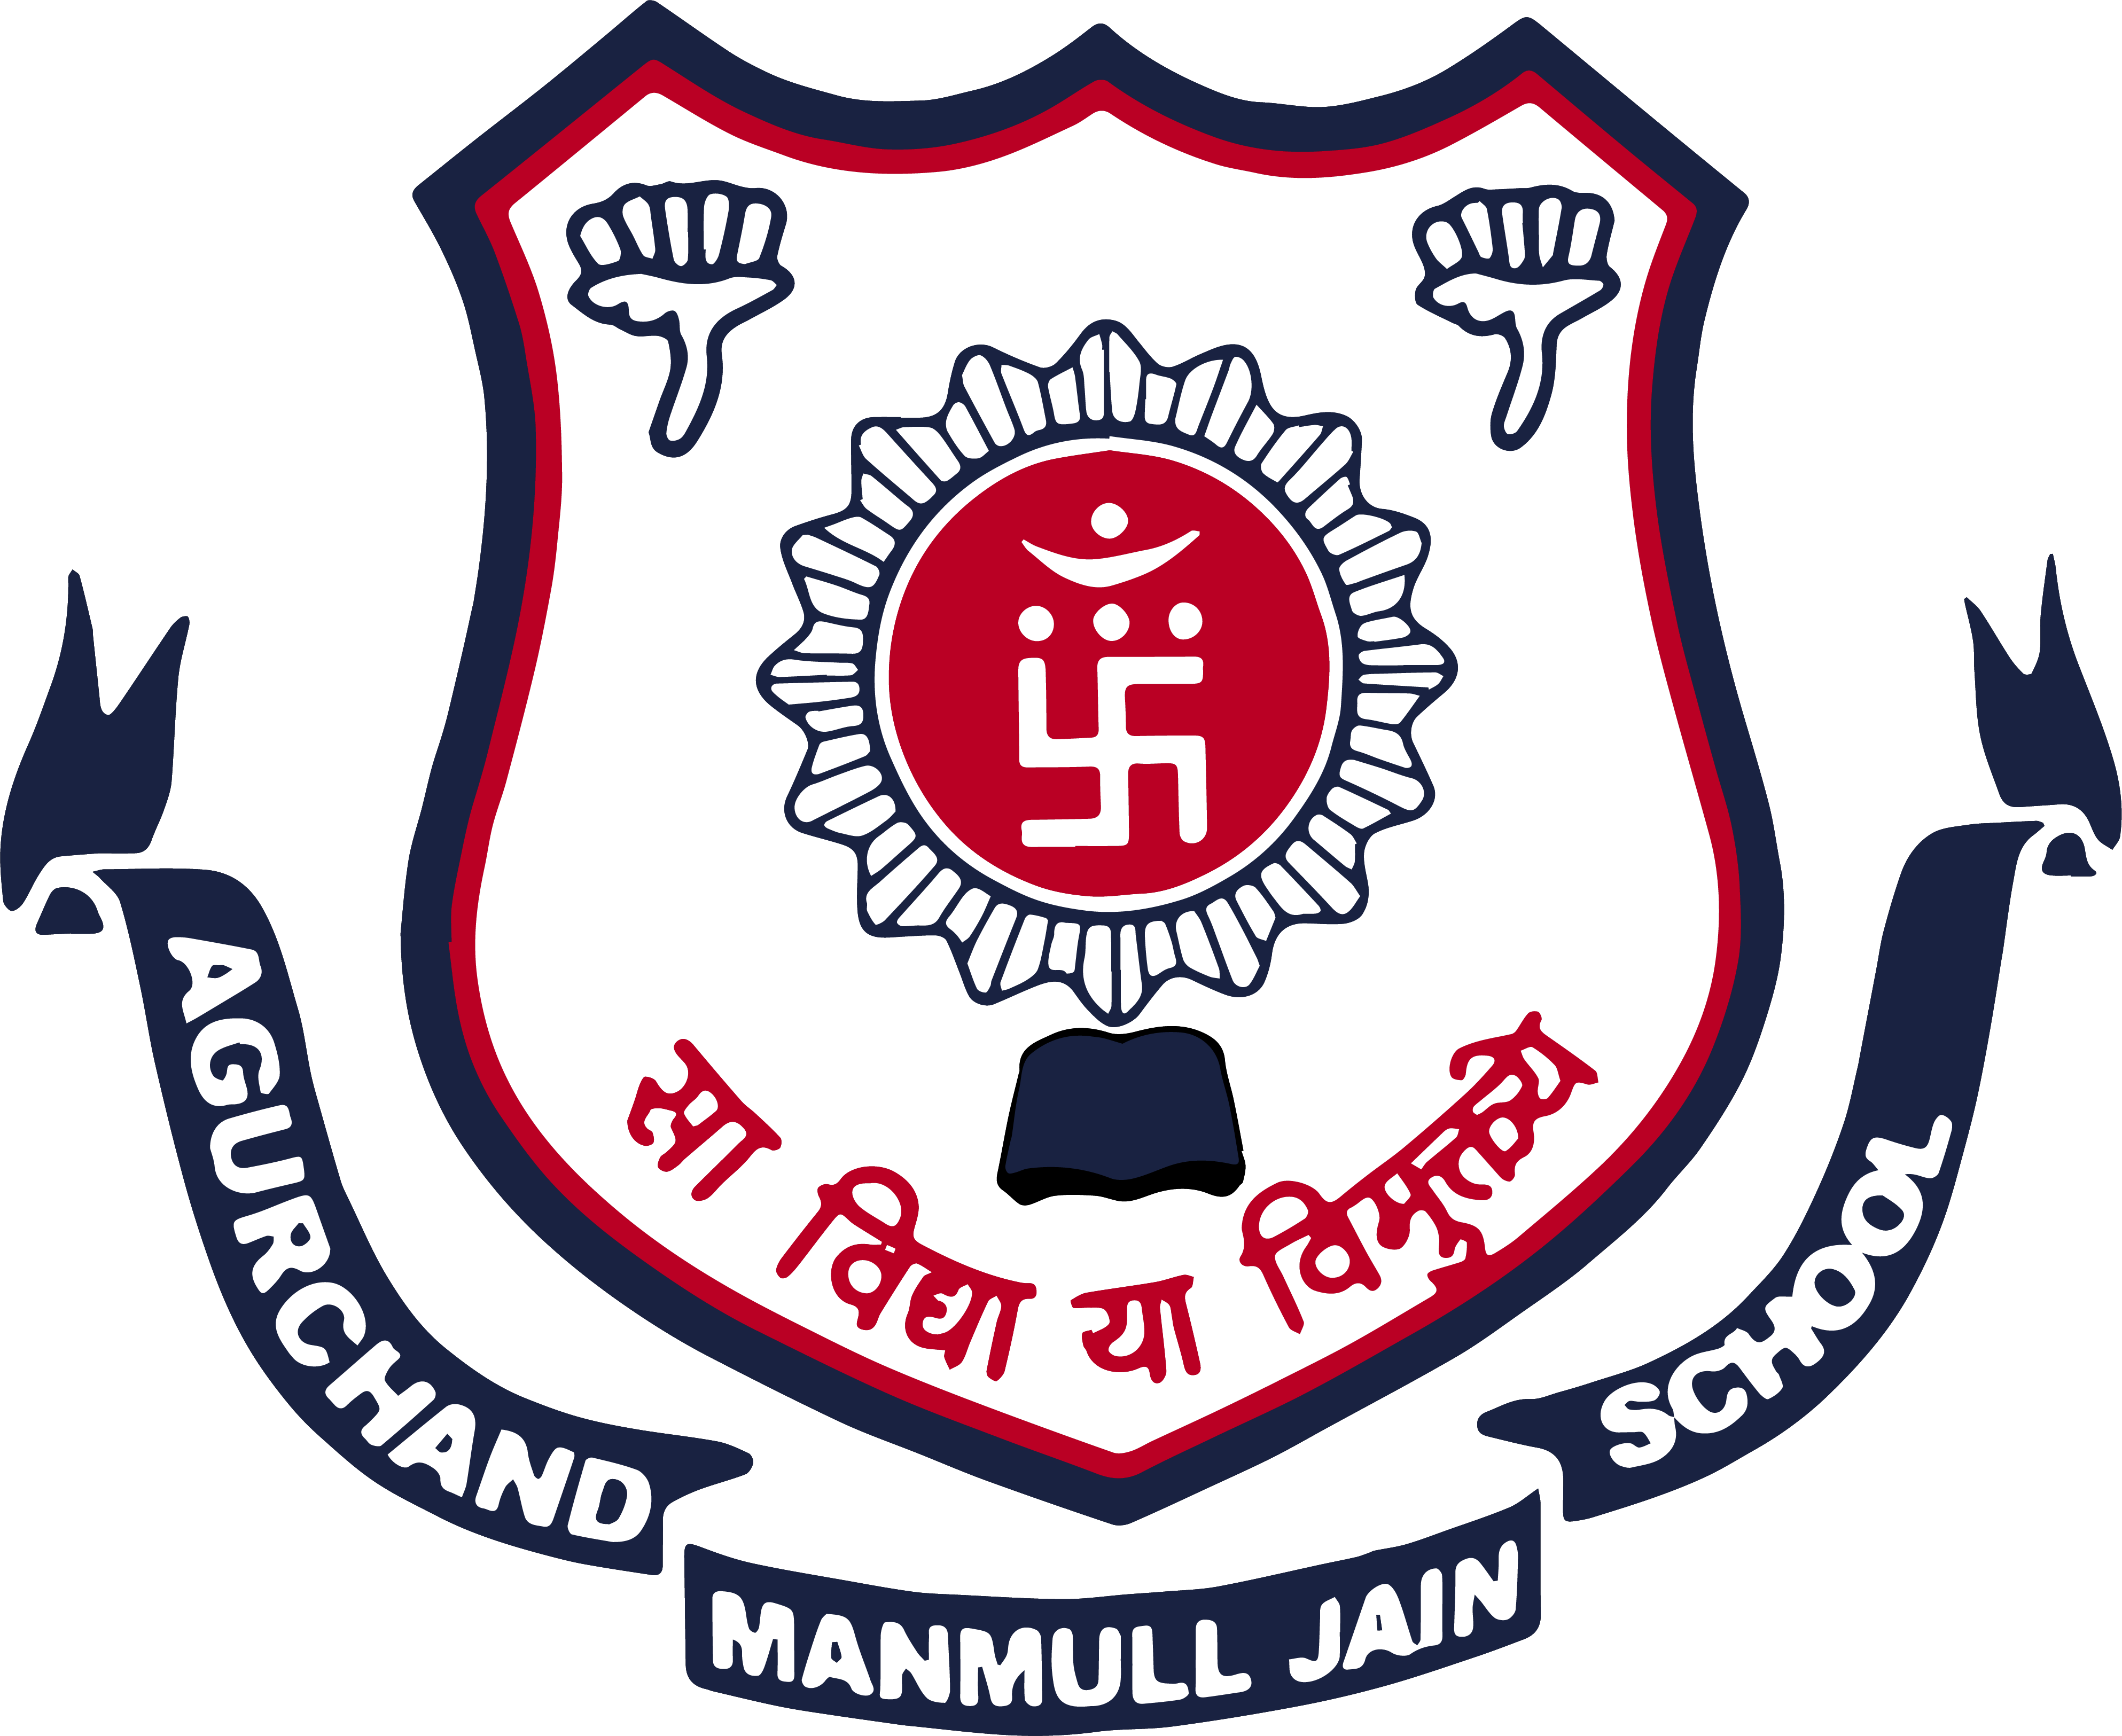 Agurchand Manmull Jain School Logo